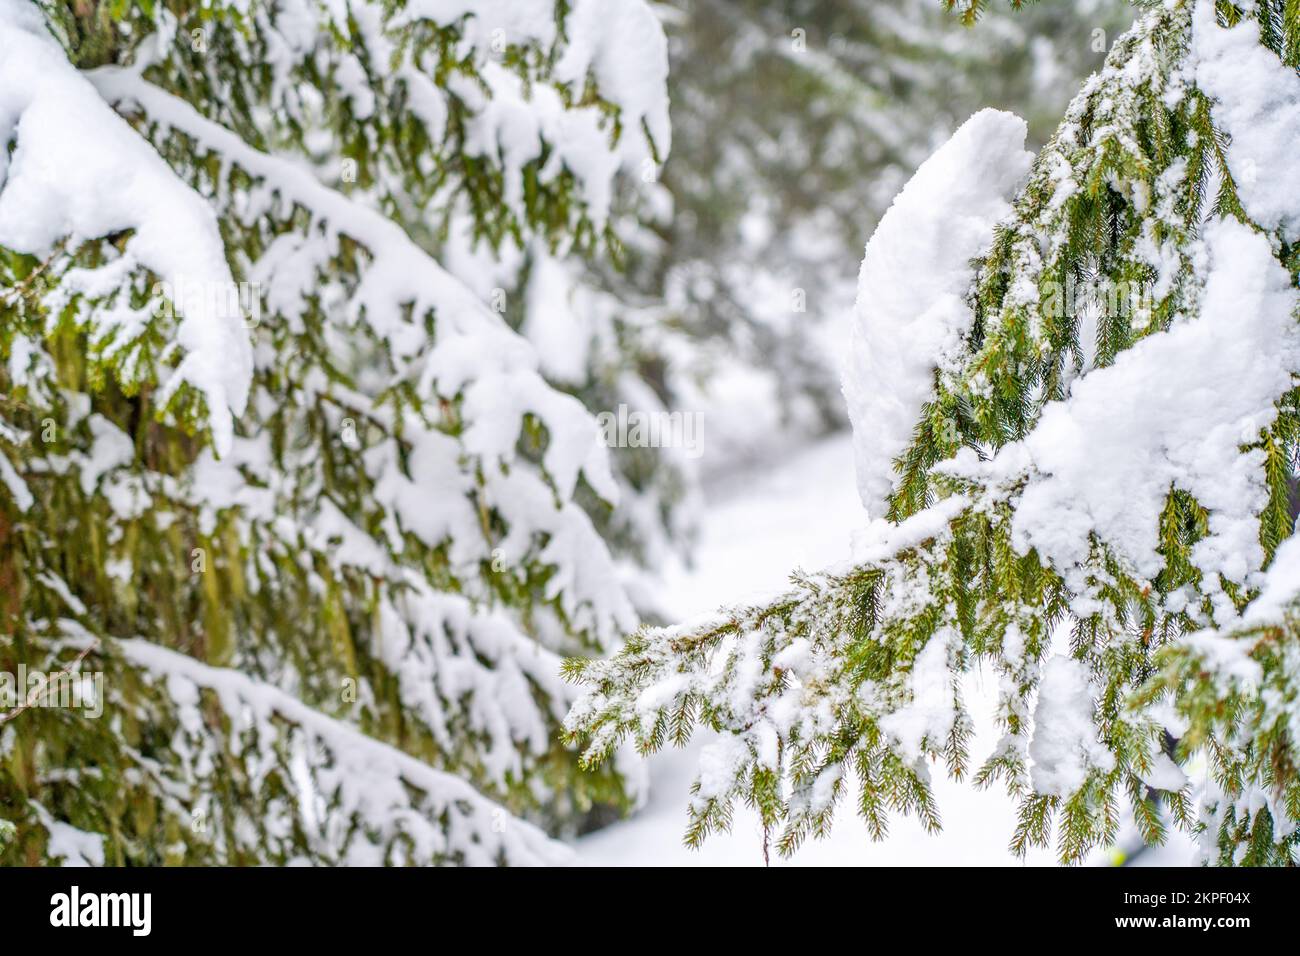 Tannenbäume verzweigen sich unter einer riesigen Schicht Schneeflocken. Gefrorener Ast im Winterwald, natürlicher Hintergrund. Weihnachten und Neujahr c Stockfoto